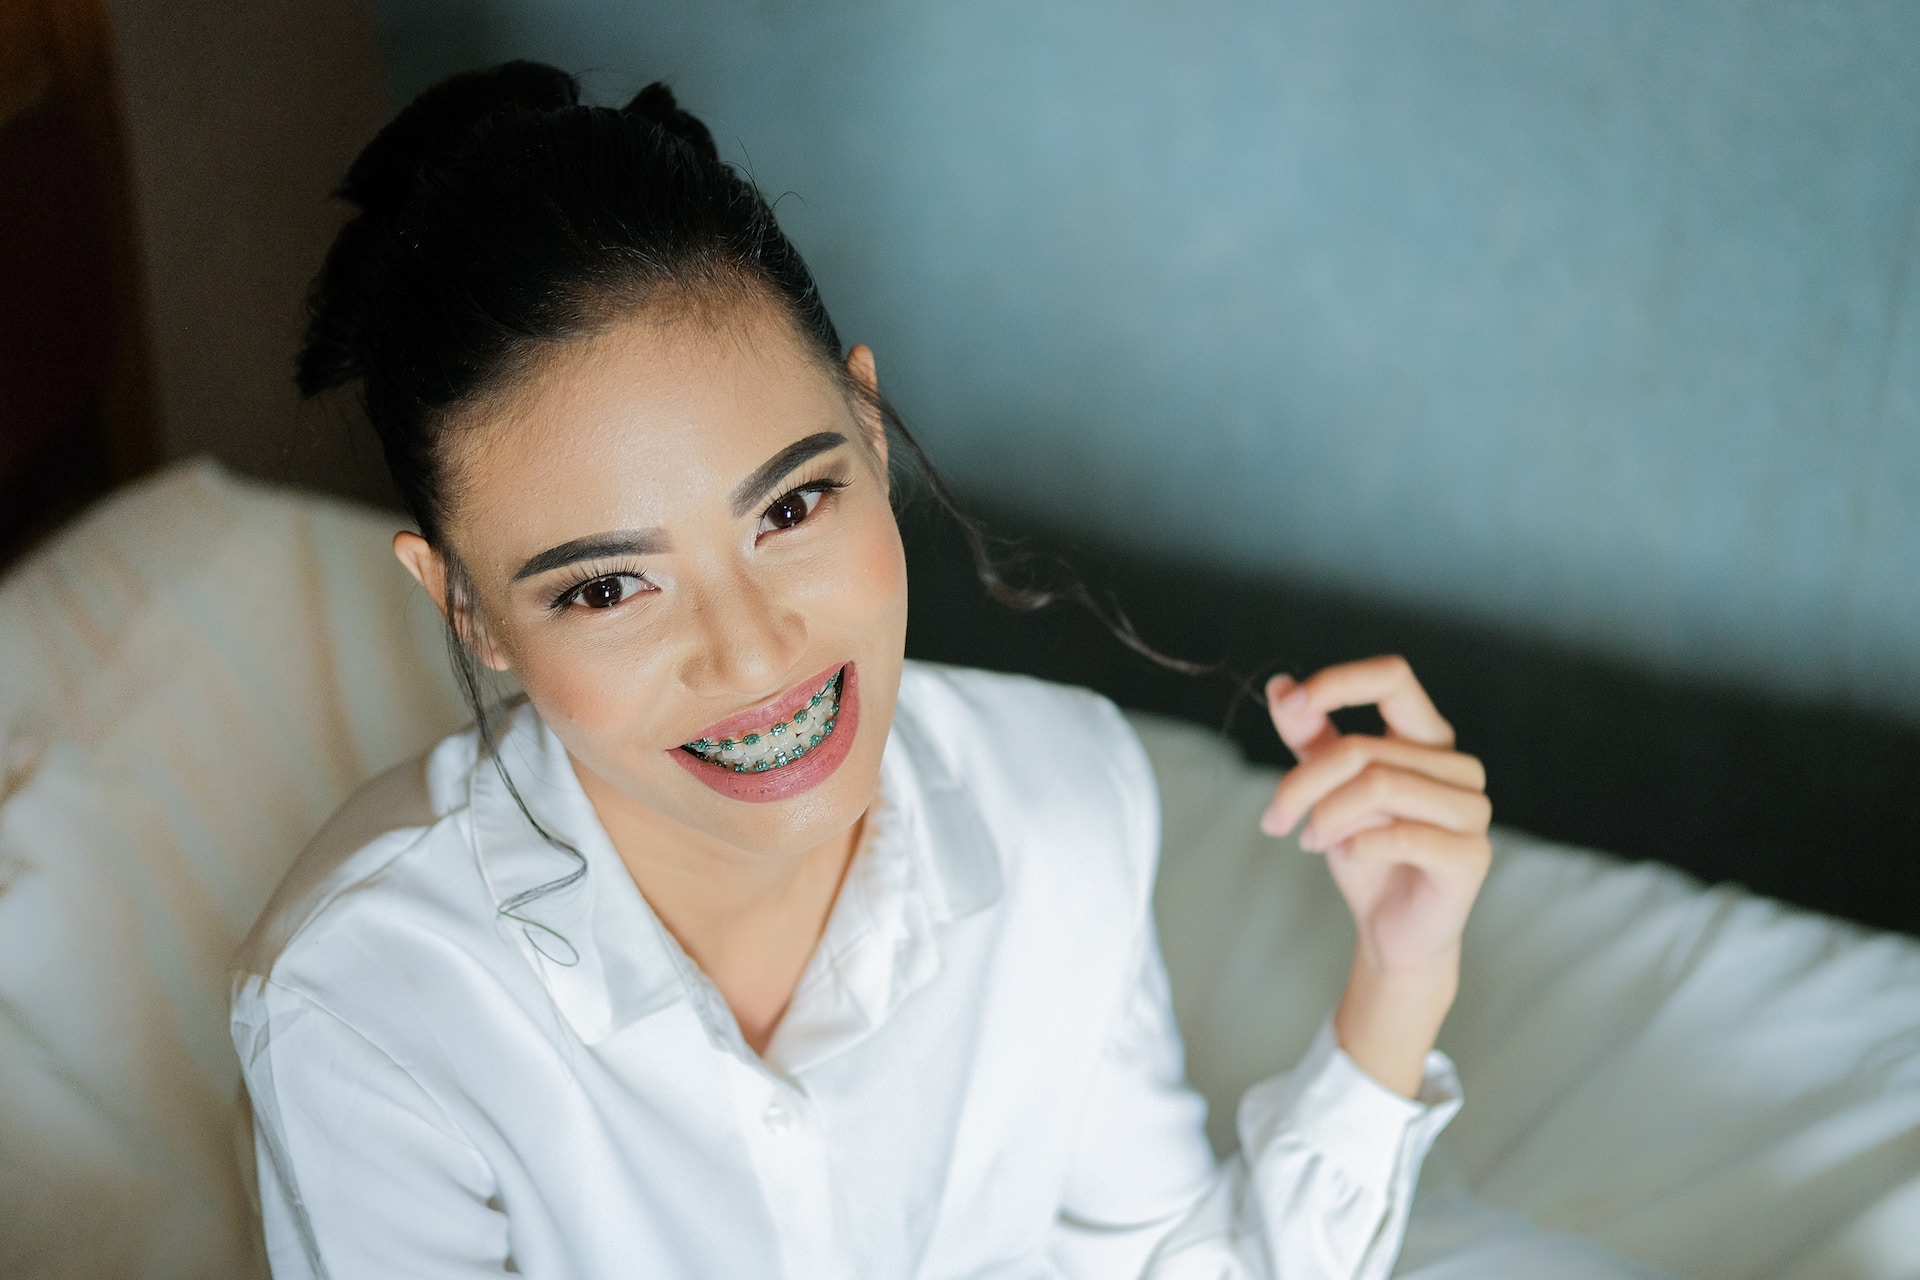 Leczenie ortodontyczne, czyli dbanie o piękno